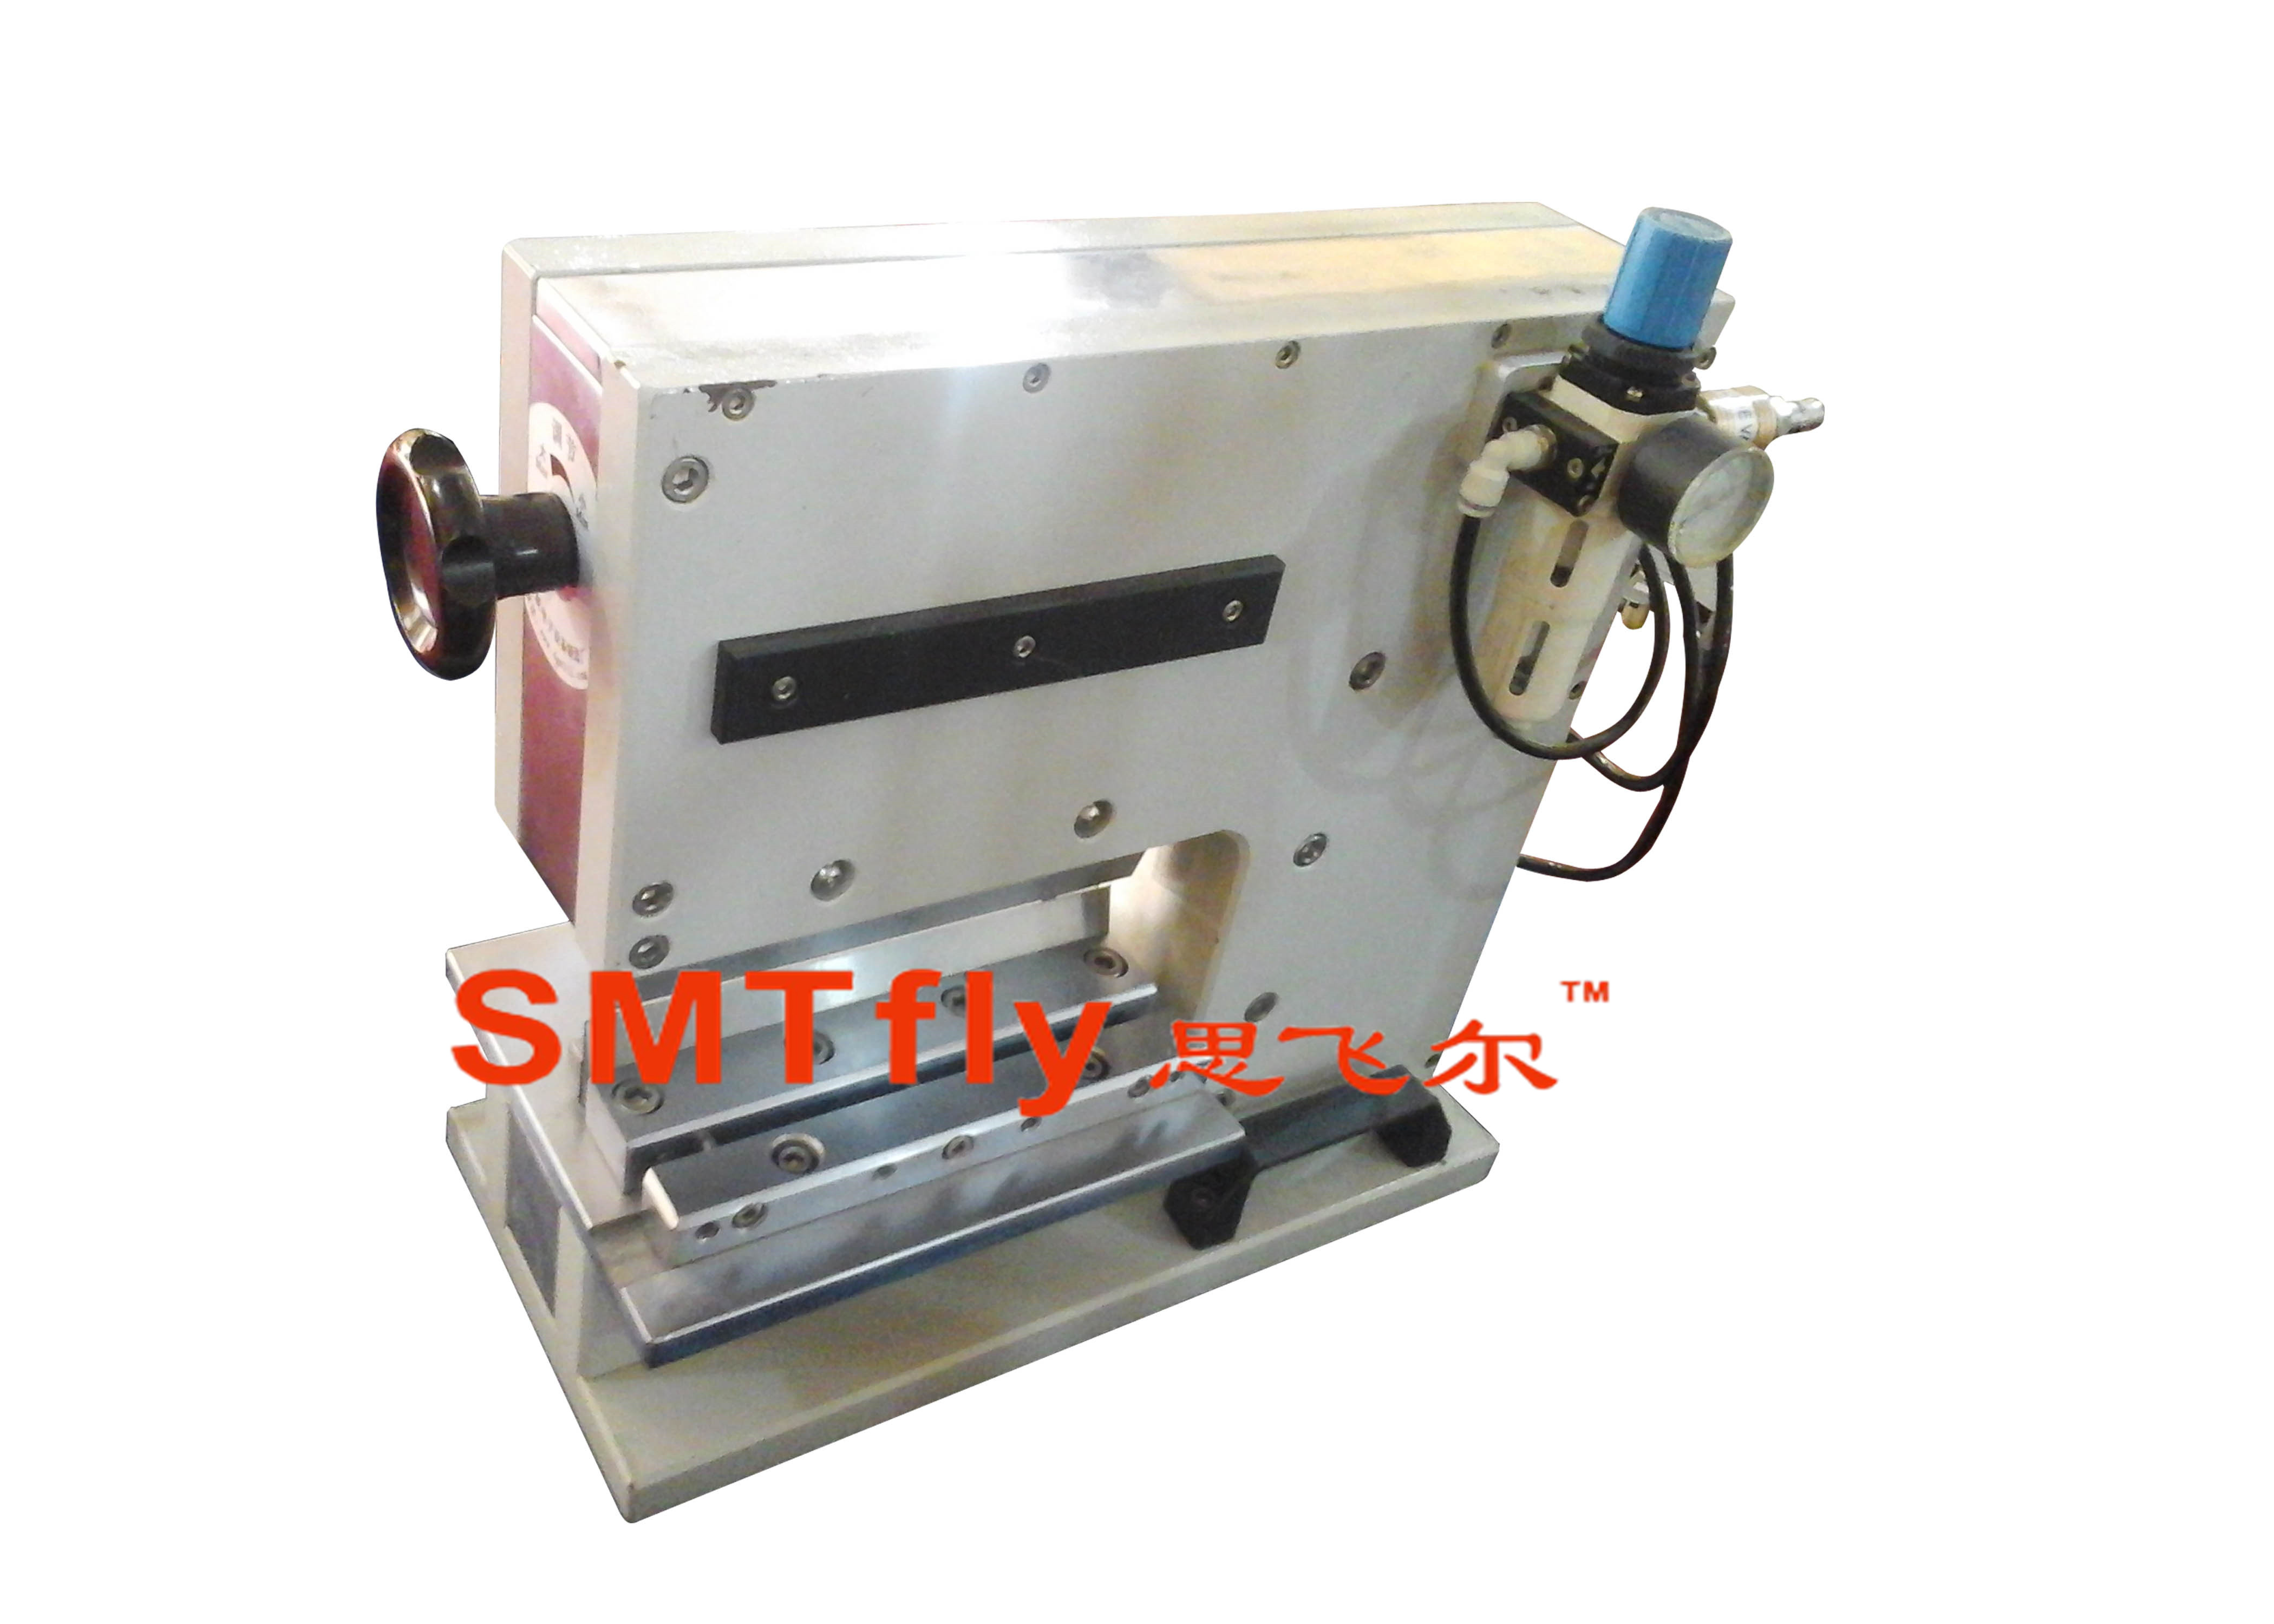 Guillotine PCB Separator,SMTfly-200J